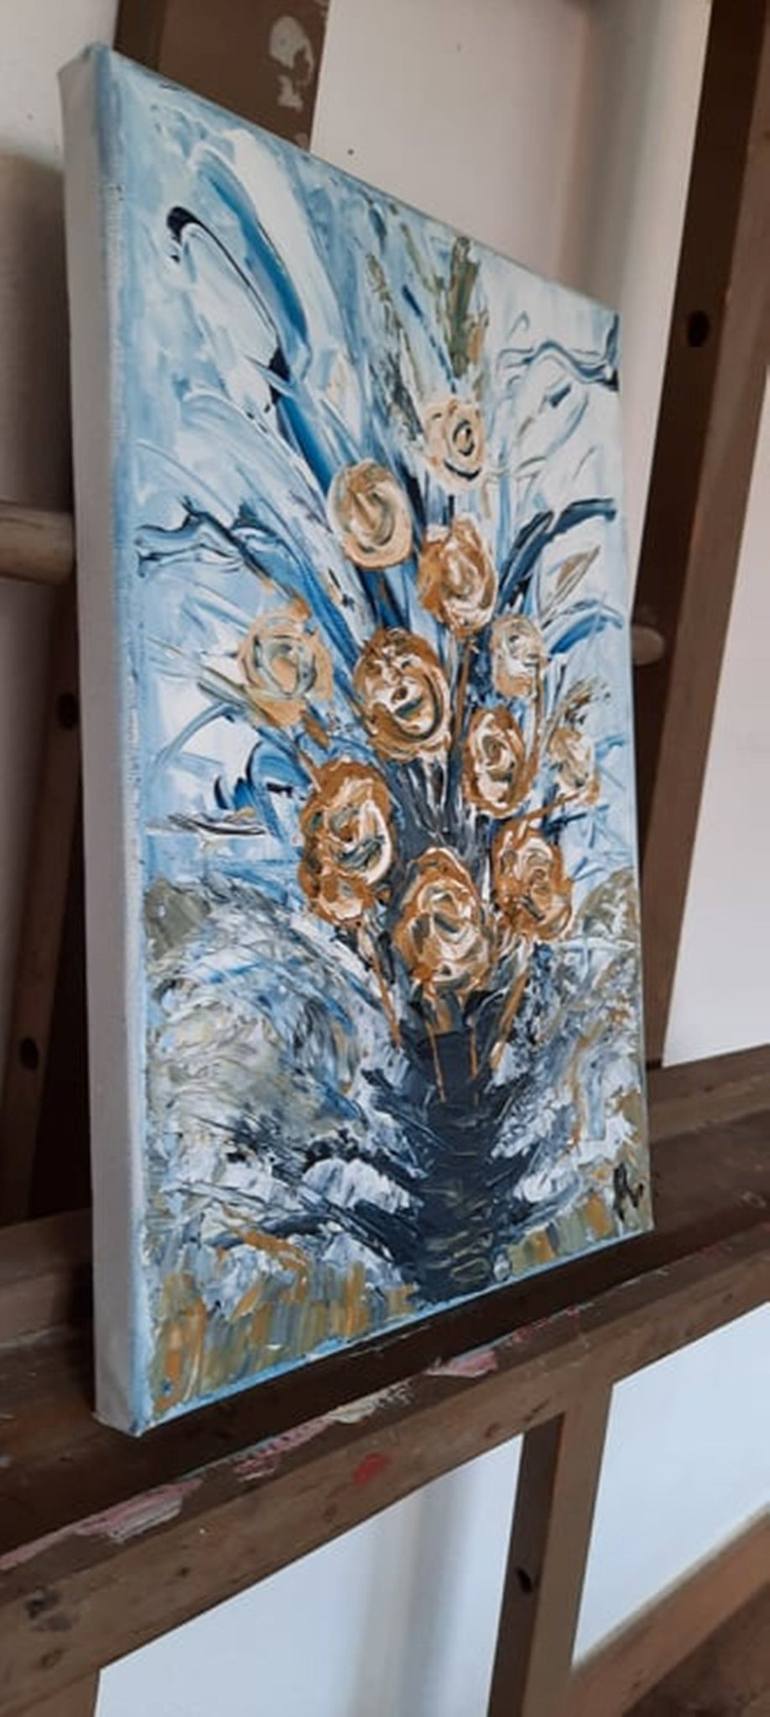 Original Floral Painting by Sanja Rubelj